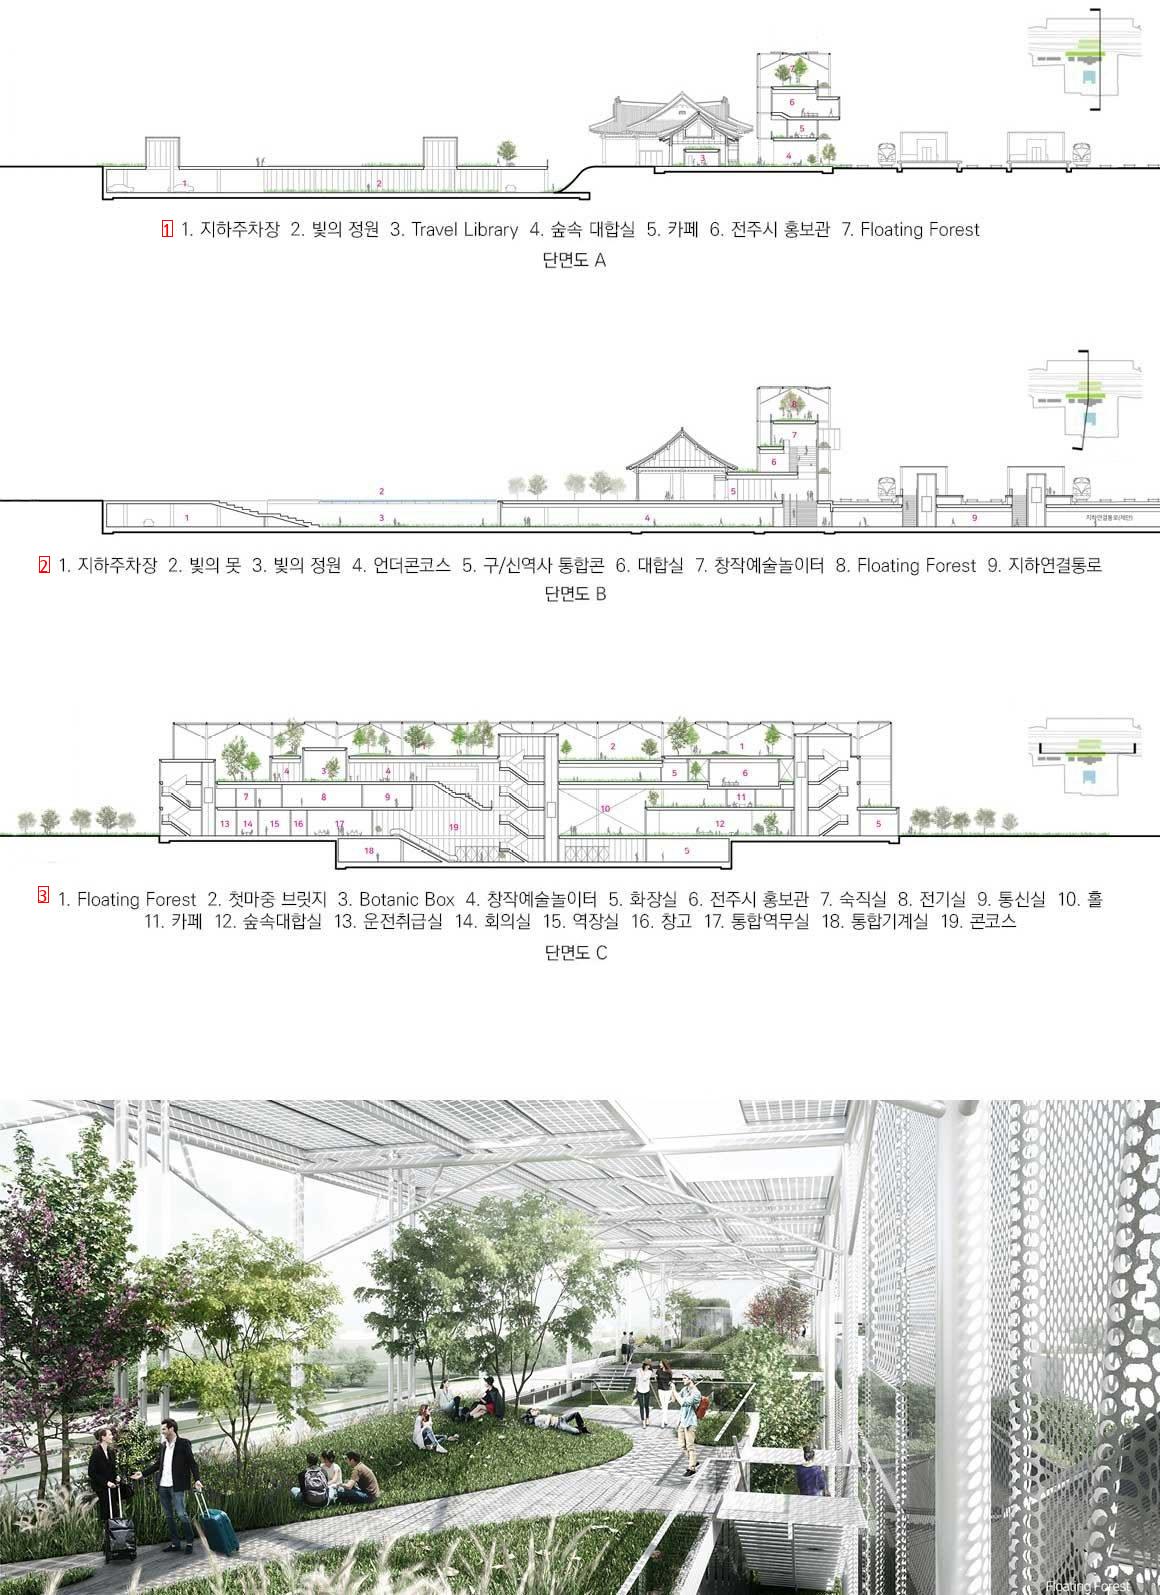 450億ウォンをかけたという全州駅新築の鳥瞰図